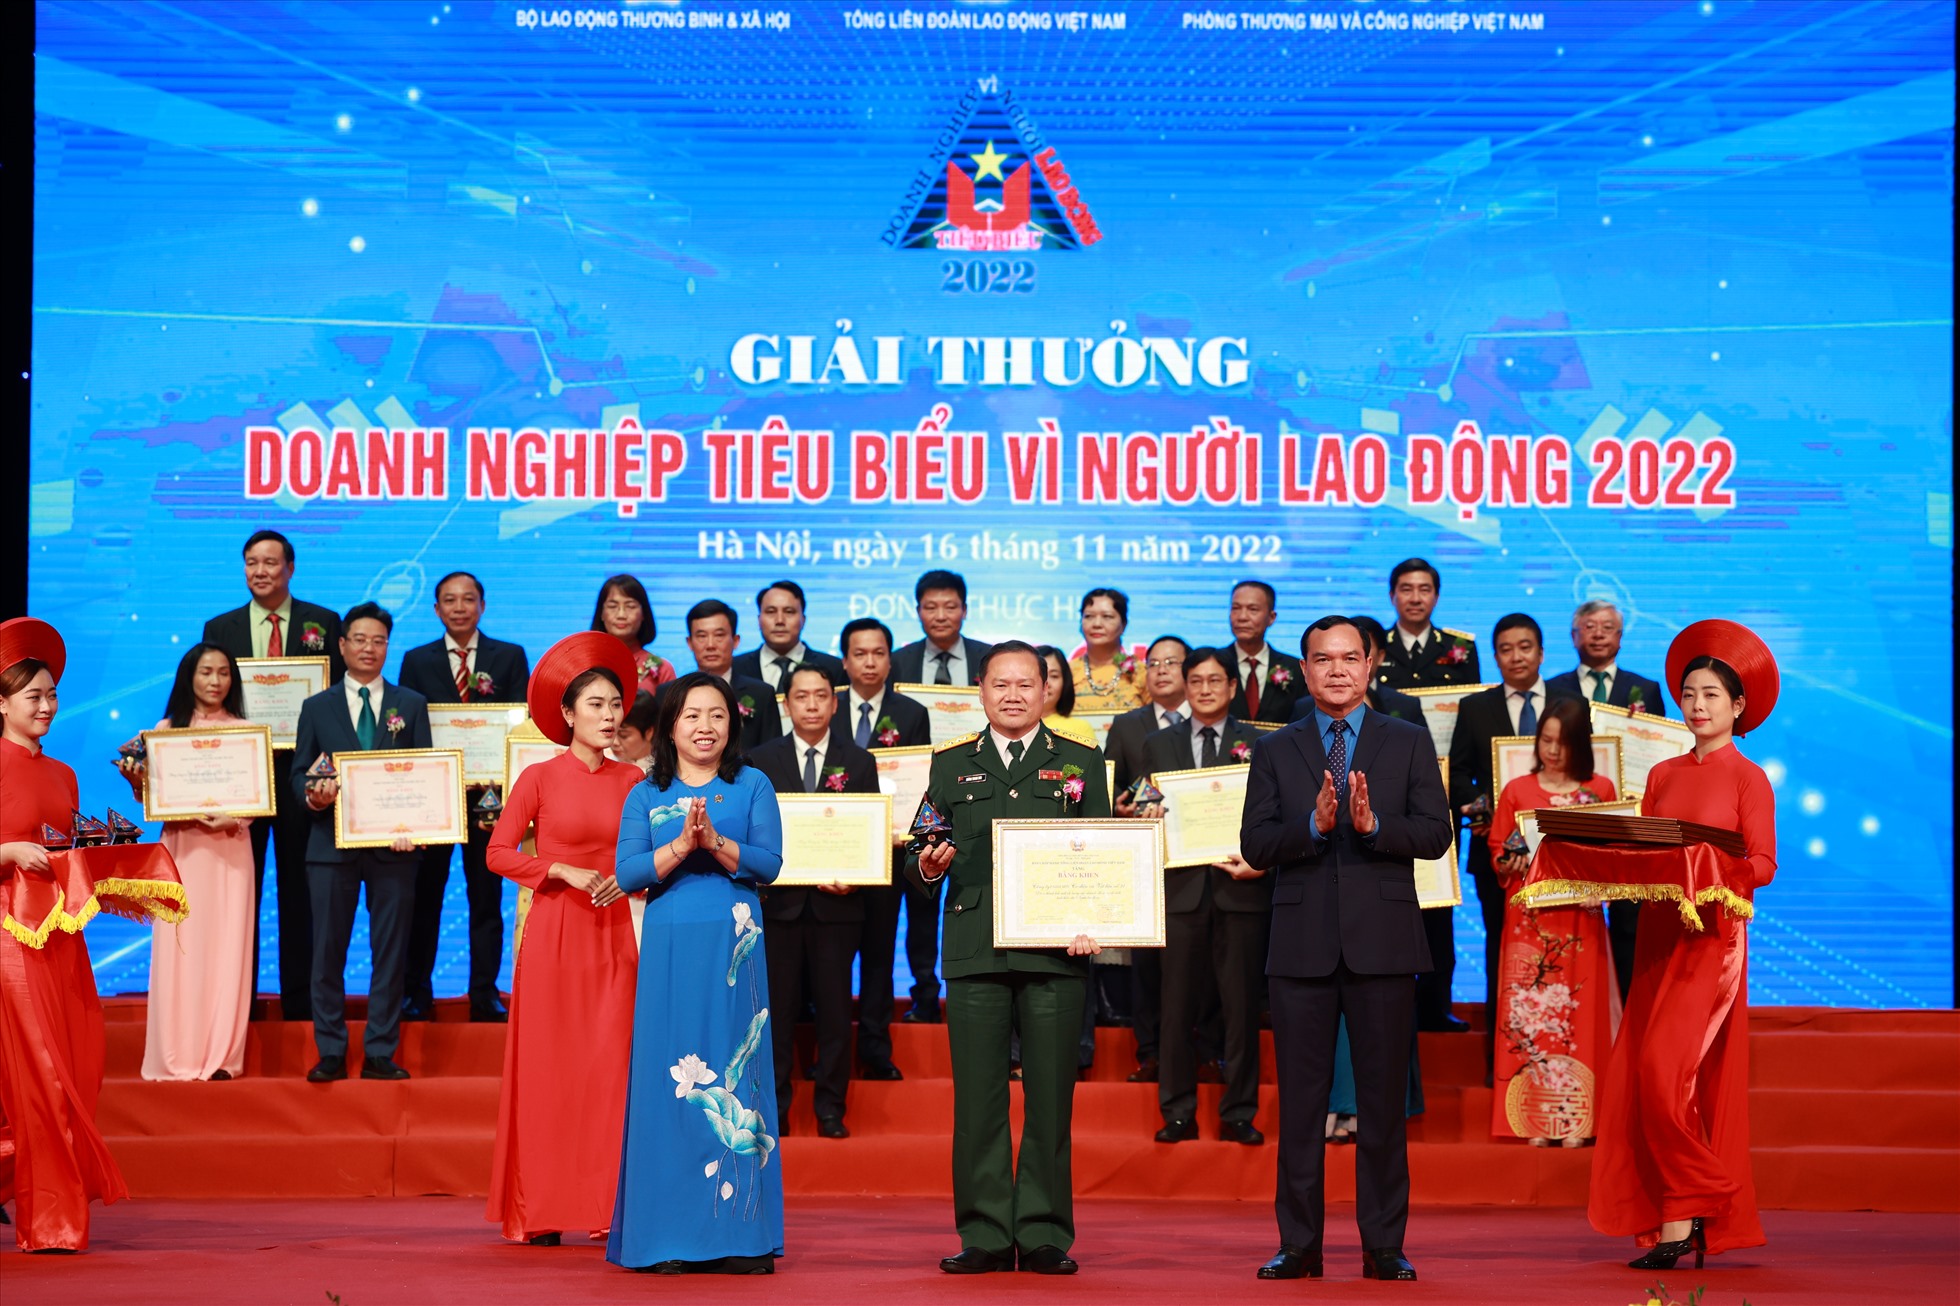 Lễ vinh danh Doanh nghiệp tiêu biểu vì Người lao động 2022 - Ảnh Hải Nguyễn